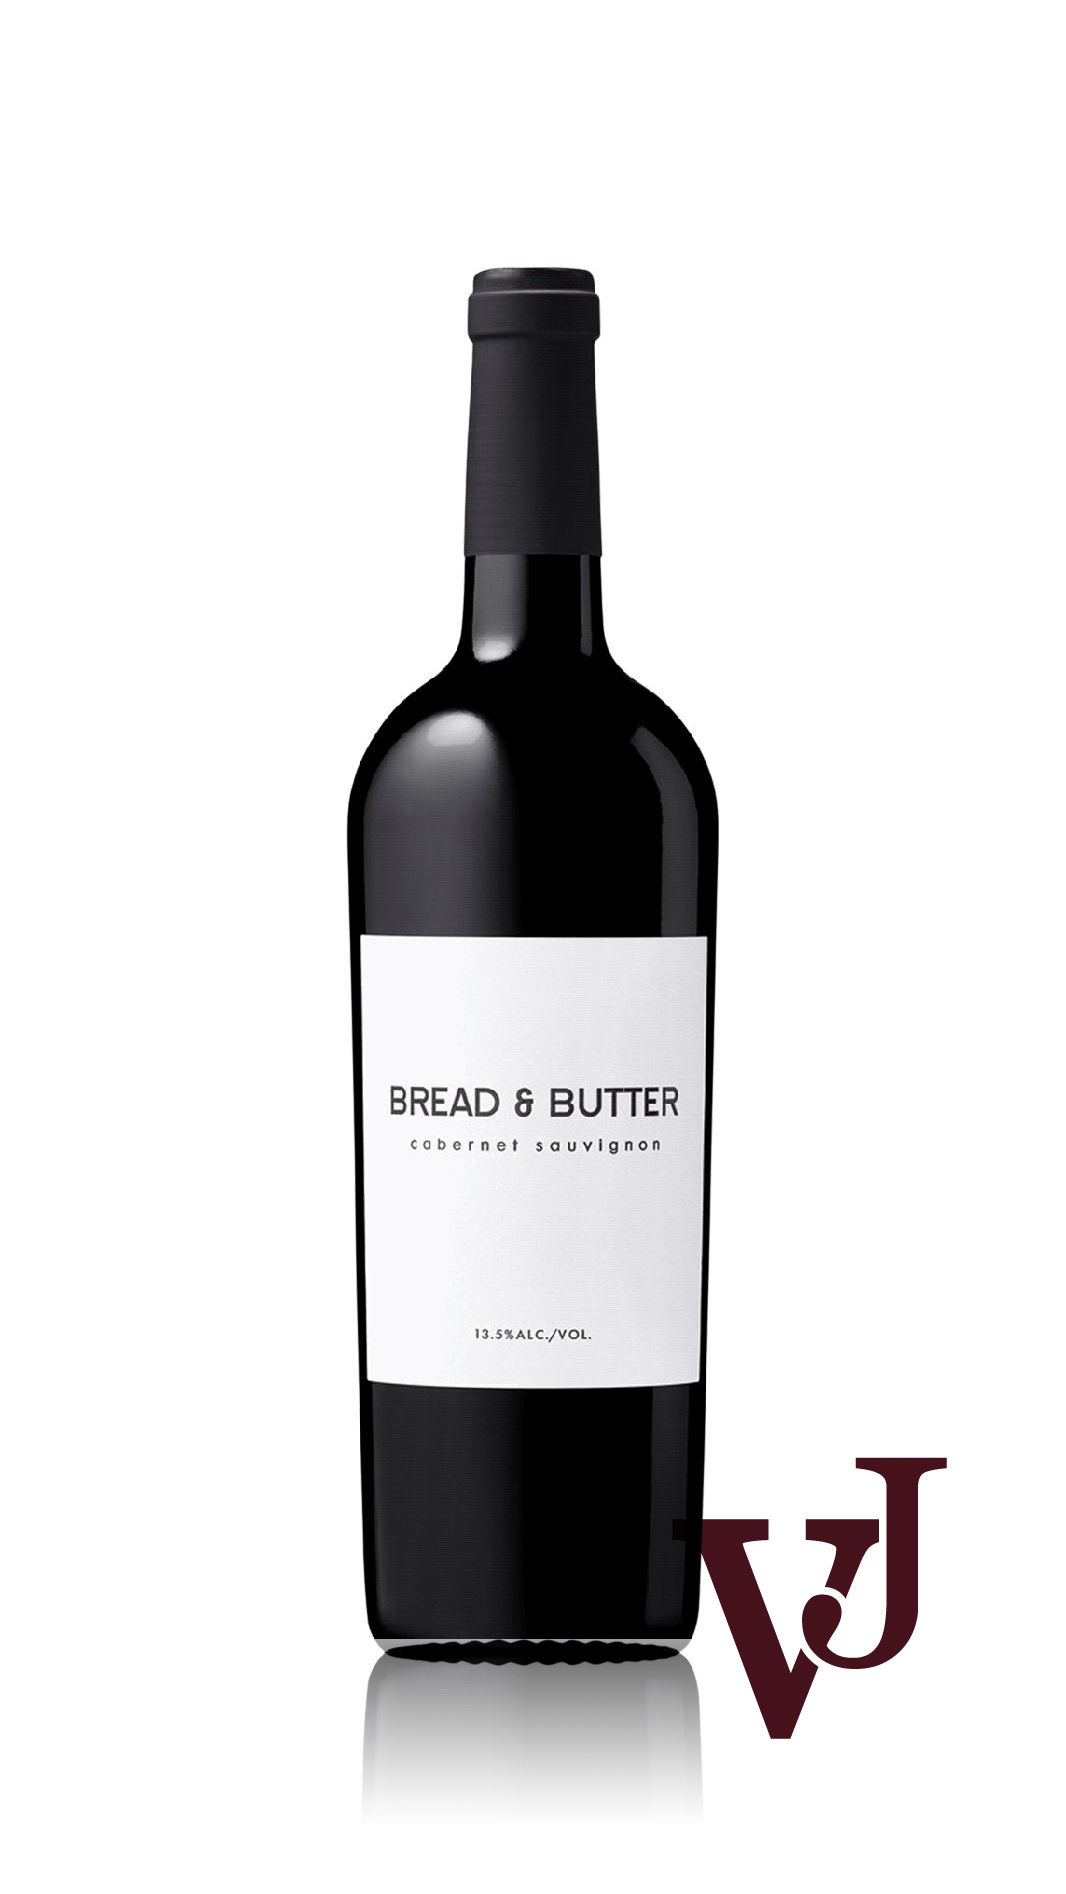 Rött Vin - Bread&Butter Cabernet Sauvignon artikel nummer 7804701 från producenten Bread & Butter Wines från området USA